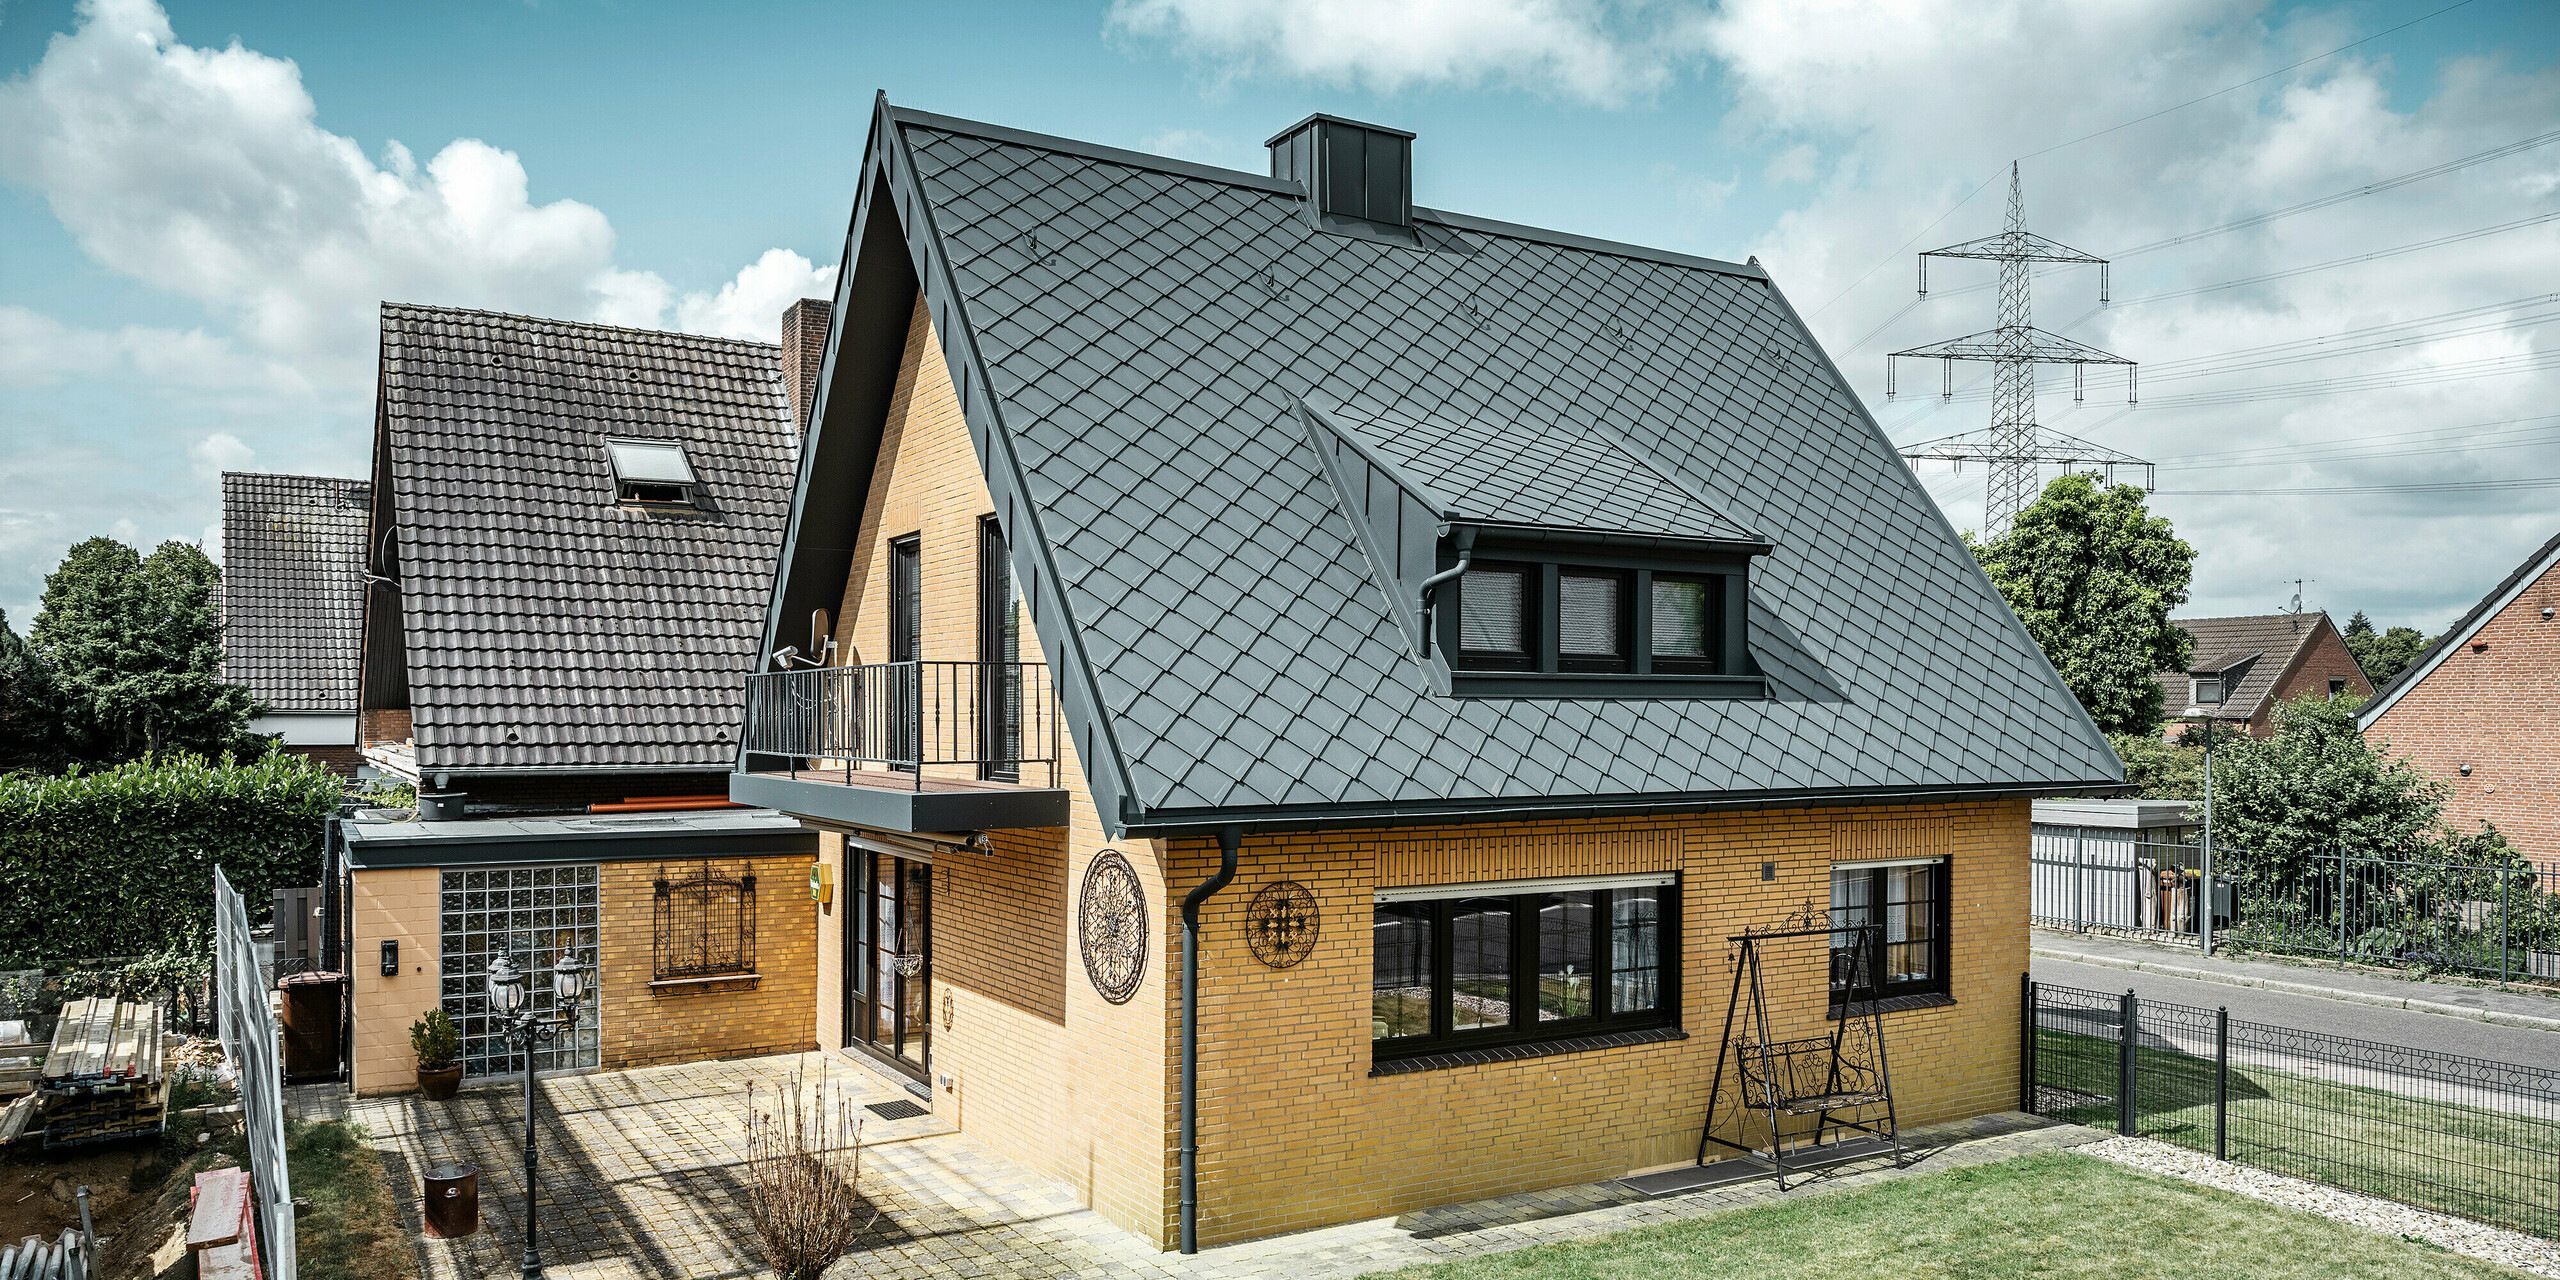 Enodružinska hiša v Tönisvorstu s PREFA streho s strešnimi rombi 29×29 v P.10 antracitni barvi, ki imajo izrazit karo vzorec. Mansarde, dimnik in vhodni prostor so obloženi s sistemom PREFALZ, ki skupaj z odtočno cevjo in visečim žlebom v P.10 antracitni barvi daje hiši brezčasen in eleganten videz. Opečna stavba z aluminijasto streho se sklada z mirno, zeleno okolico naselja.